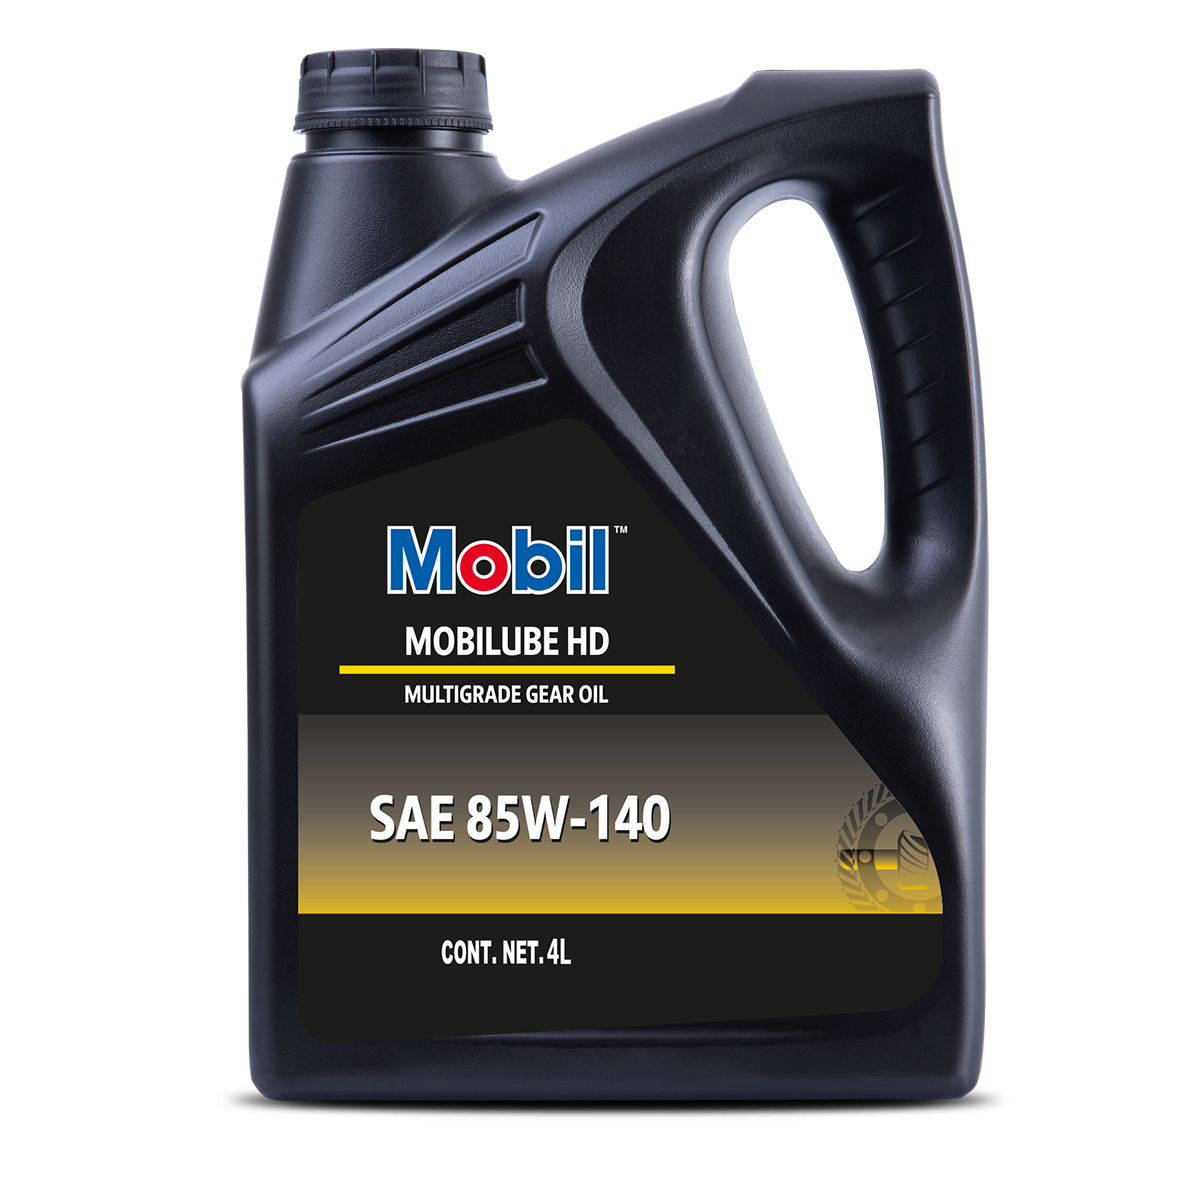 Aceite 15w40 MOBIL Delvac MX Balde 19L